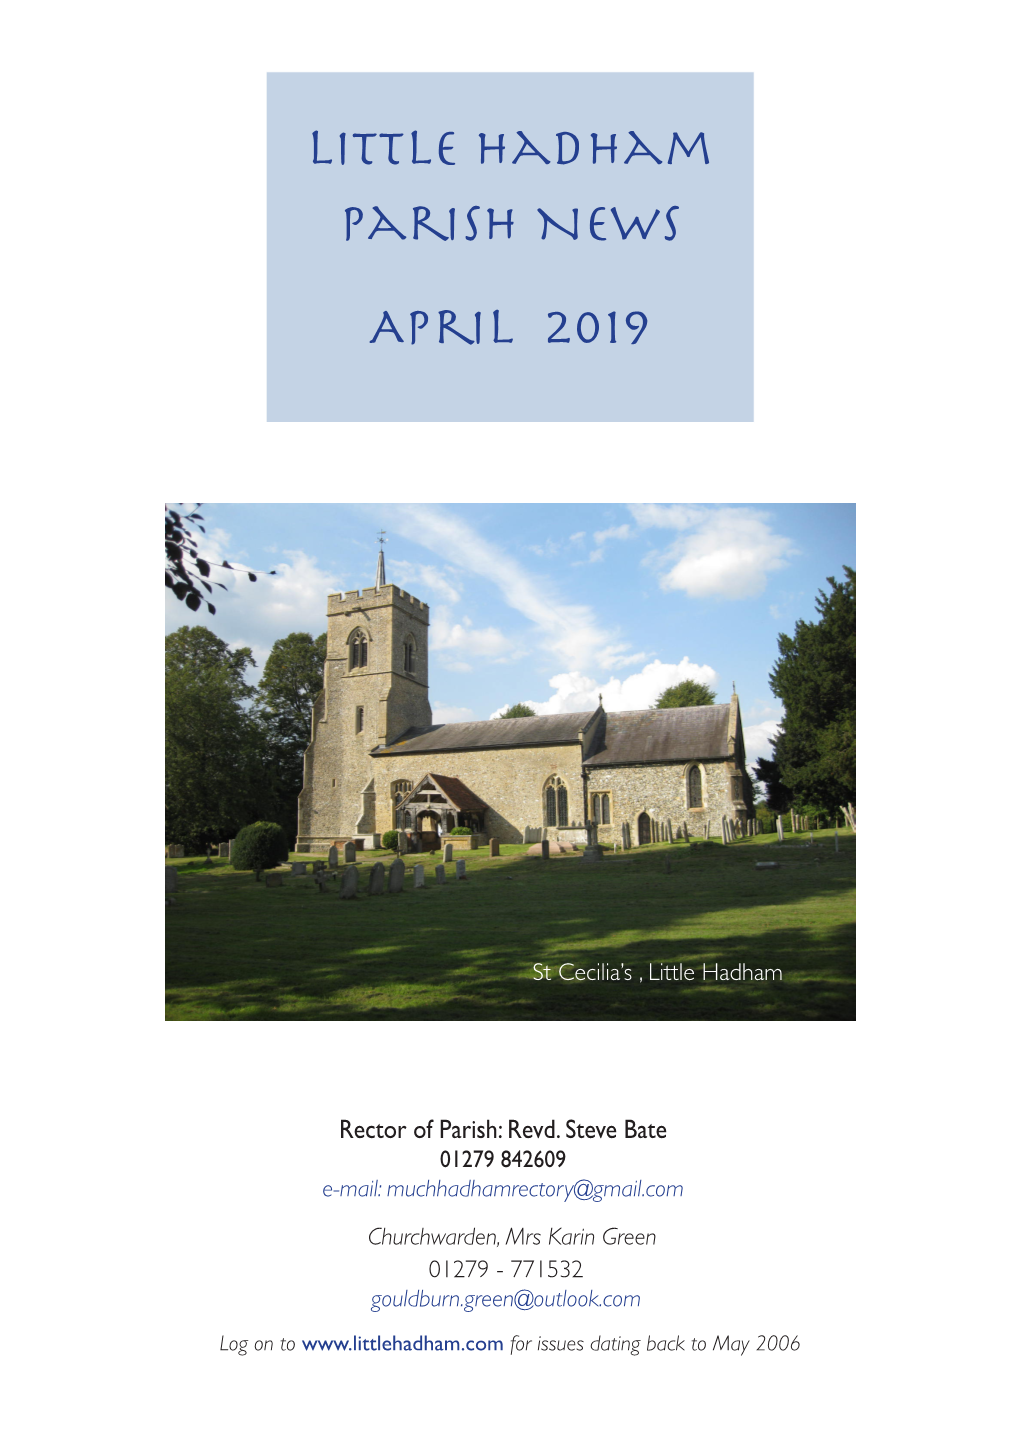 Little Hadham Parish News April 2019